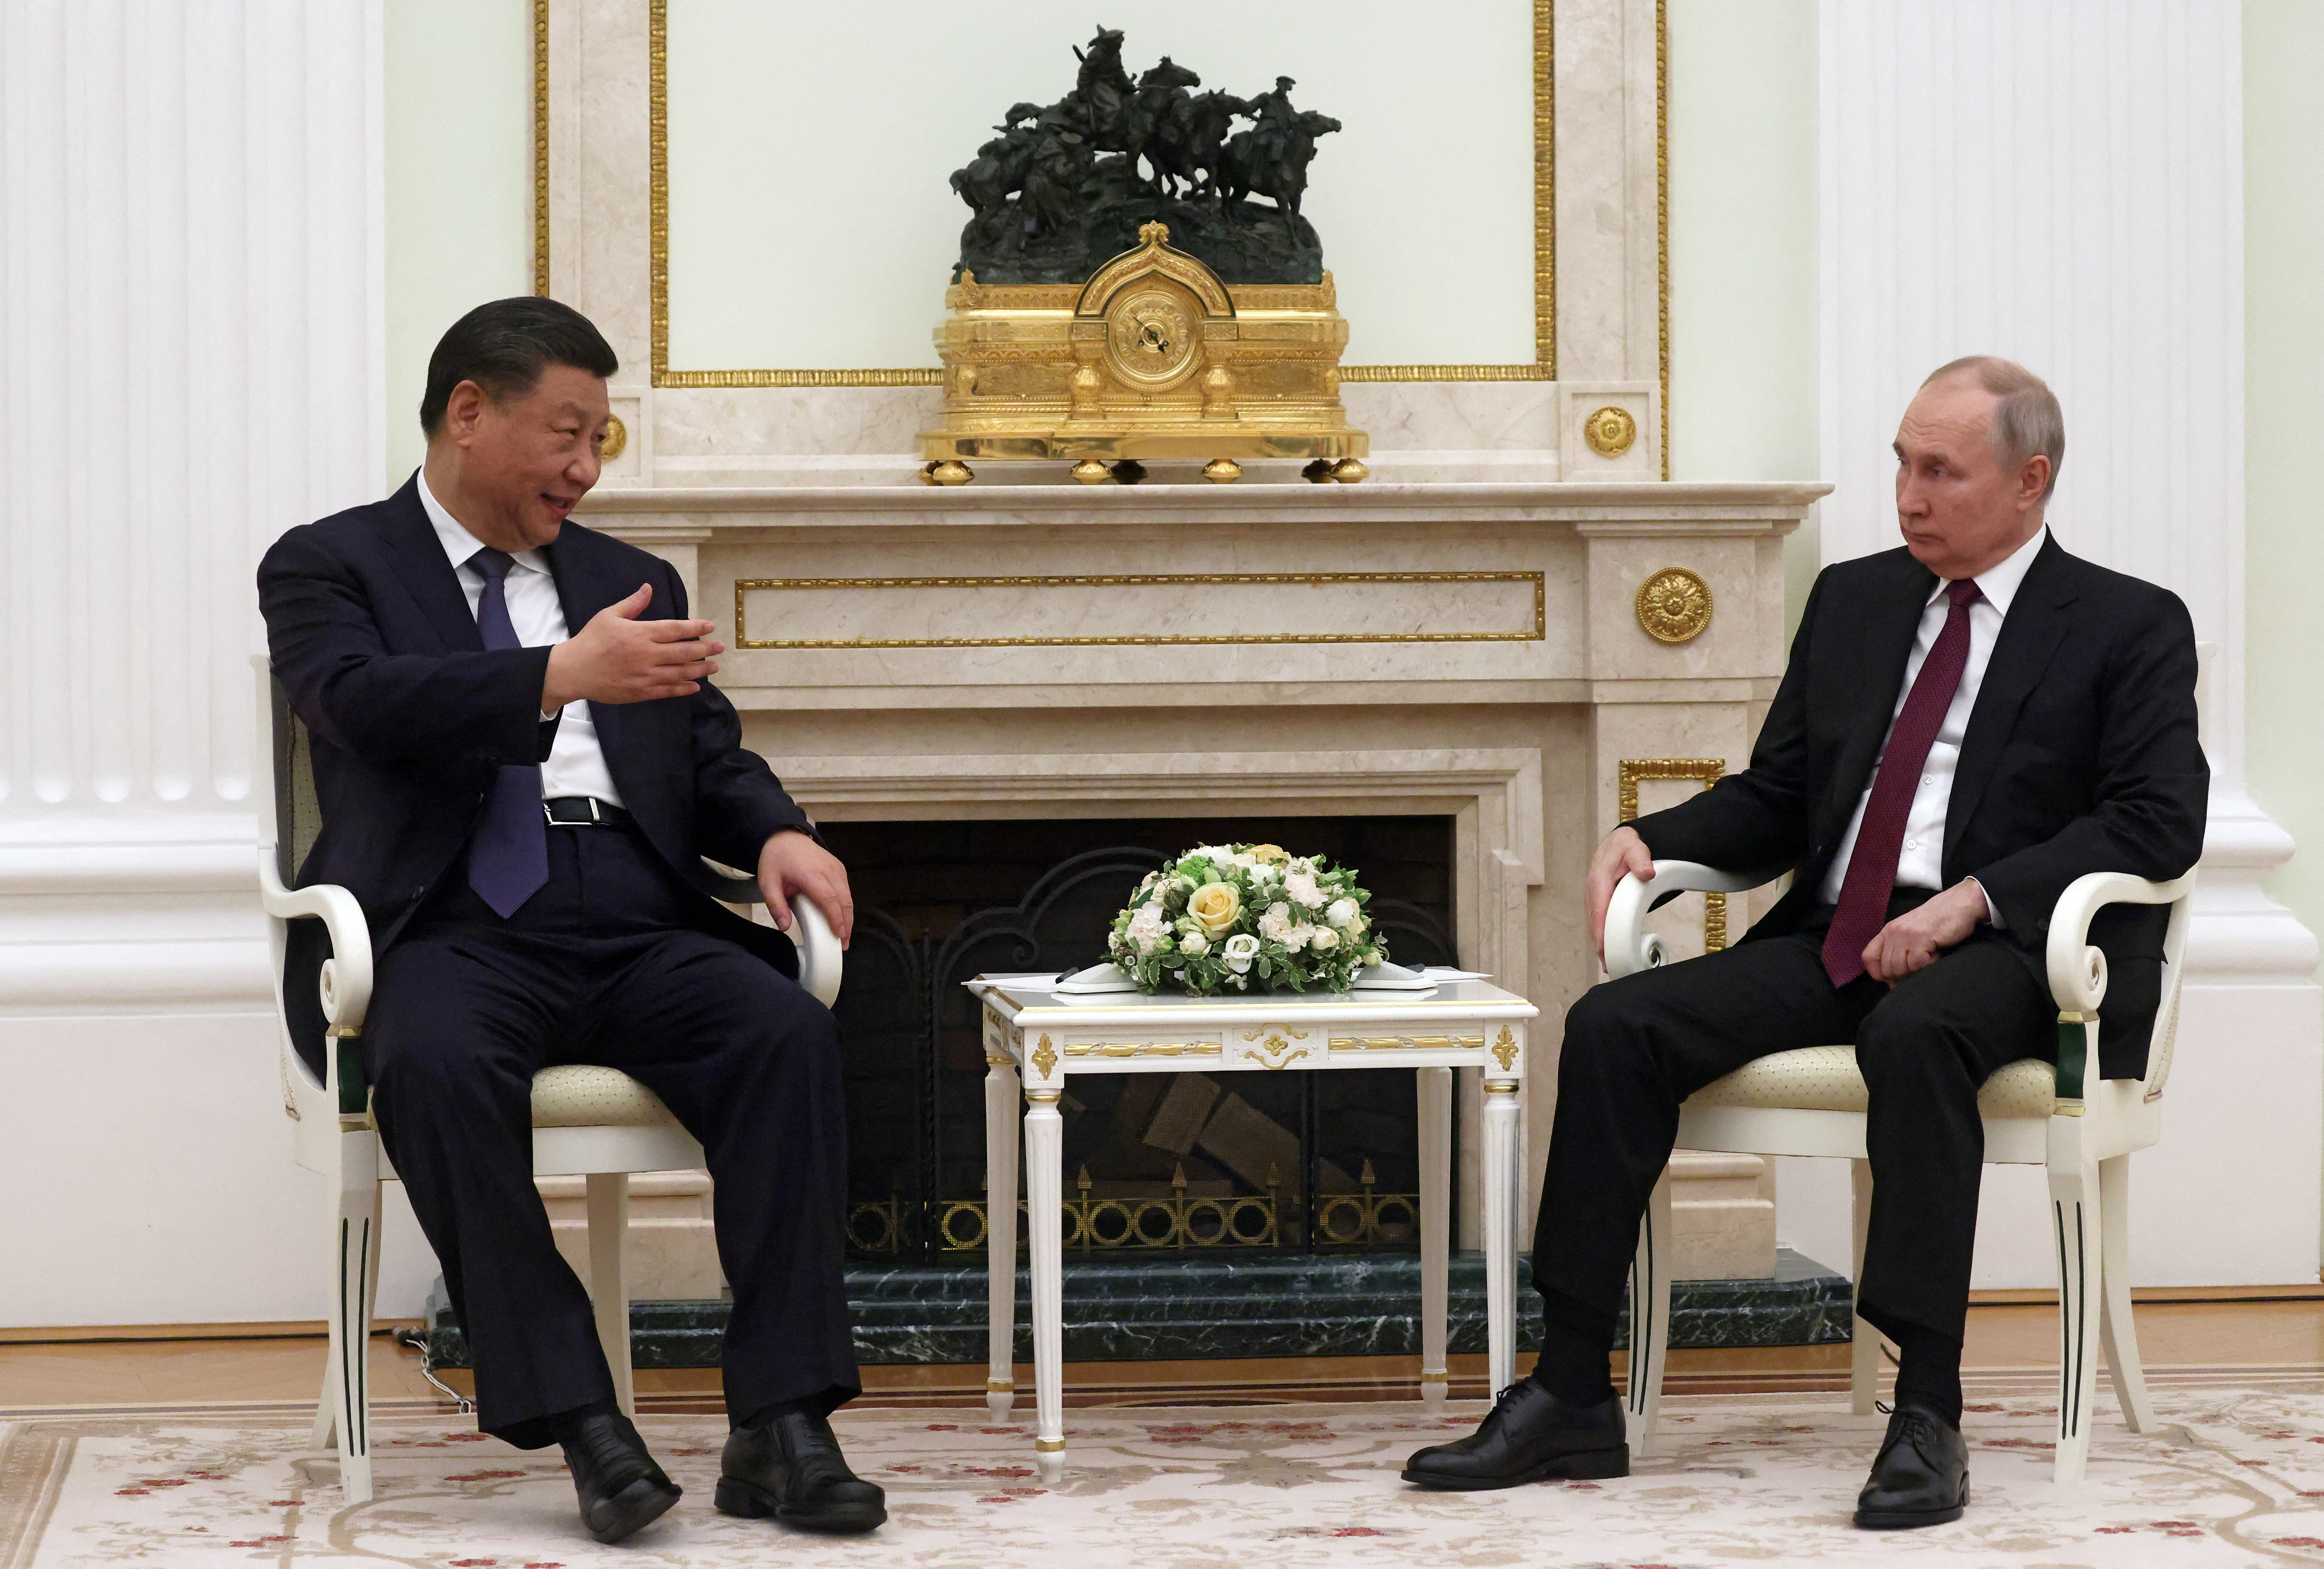 Xi Jinping le manifestó a Putin que “la mayoría de los países apoya que se alivien las tensiones” en Ucrania. (Sputnik/Sergei Karpukhin/Pool via REUTERS)